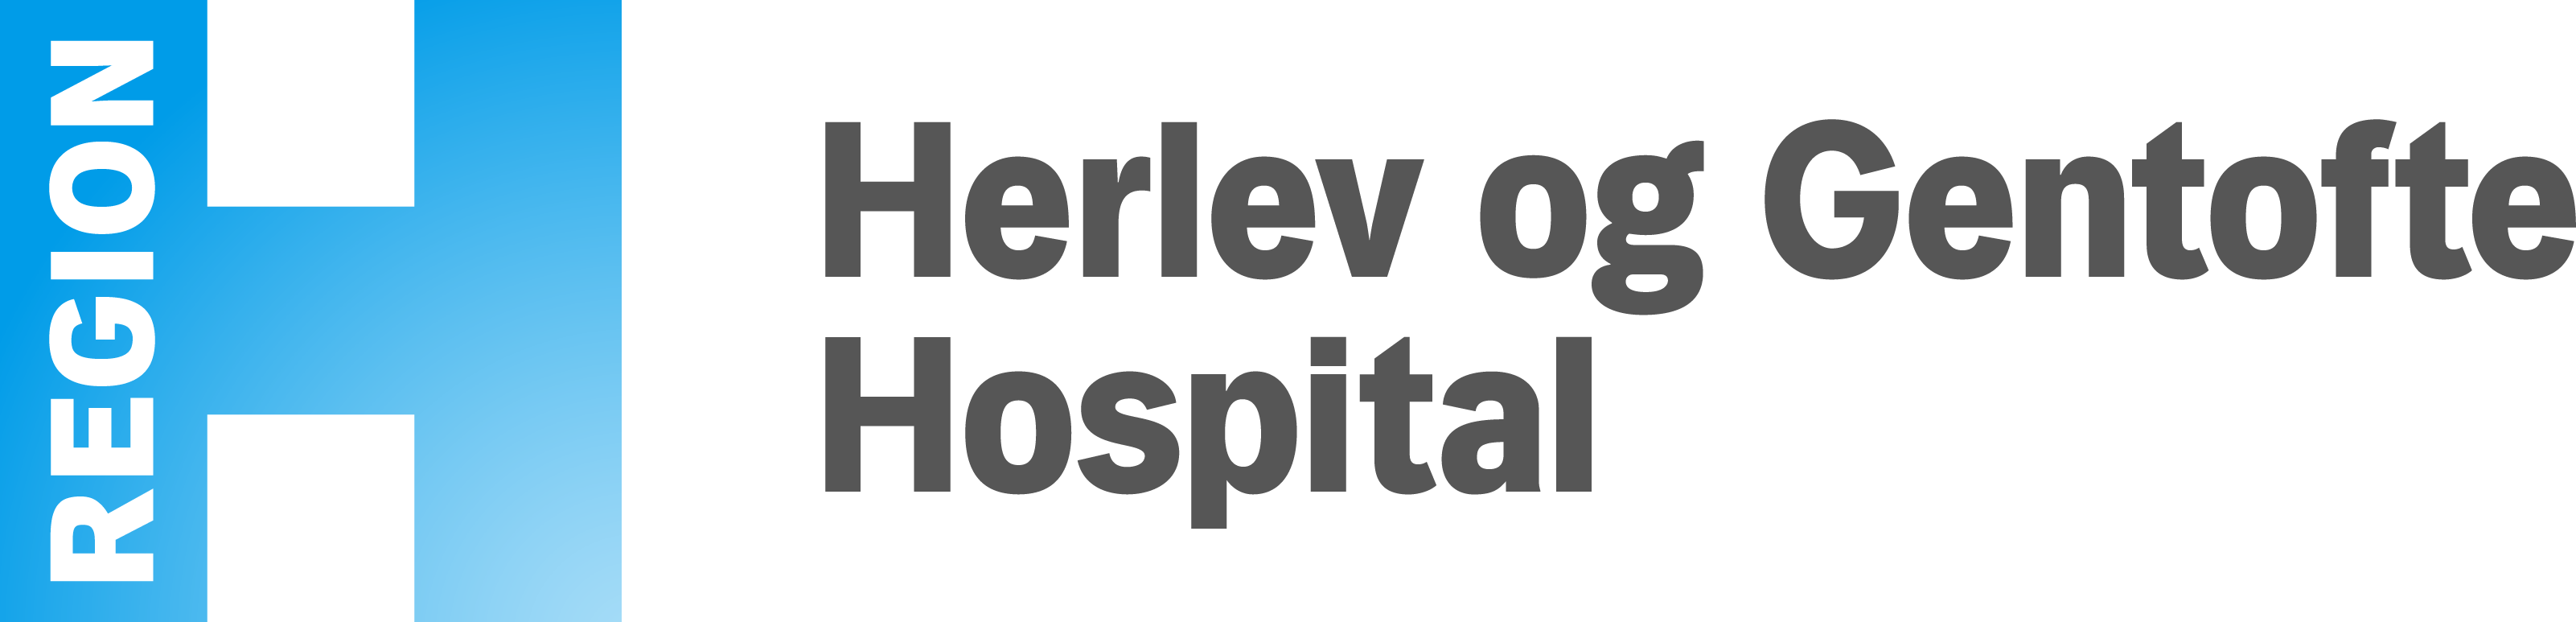 Herlev & Gentofte Hospital